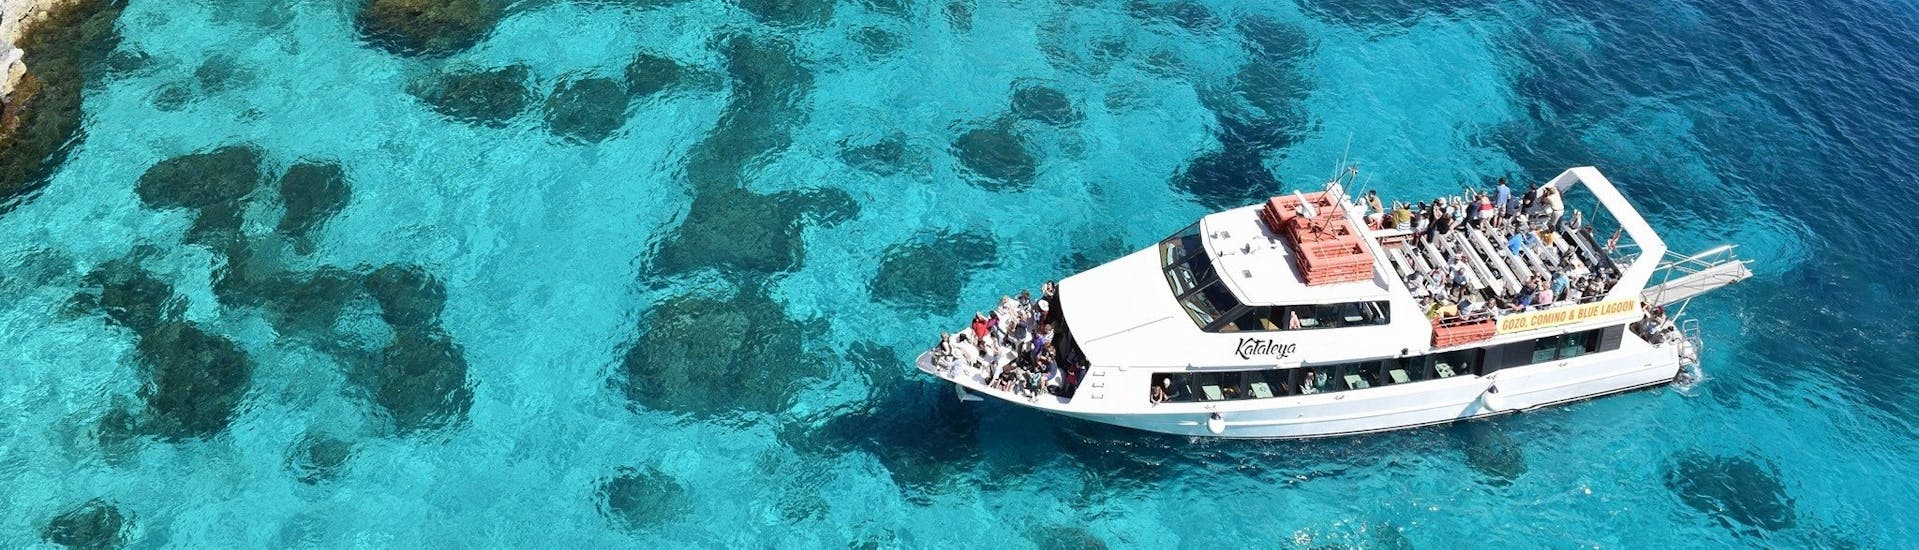 La Laguna Blu che visiterete durante la Gita in barca da Sliema a Gozo, Comino e la Laguna Blu con Luzzu Cruises Malta.